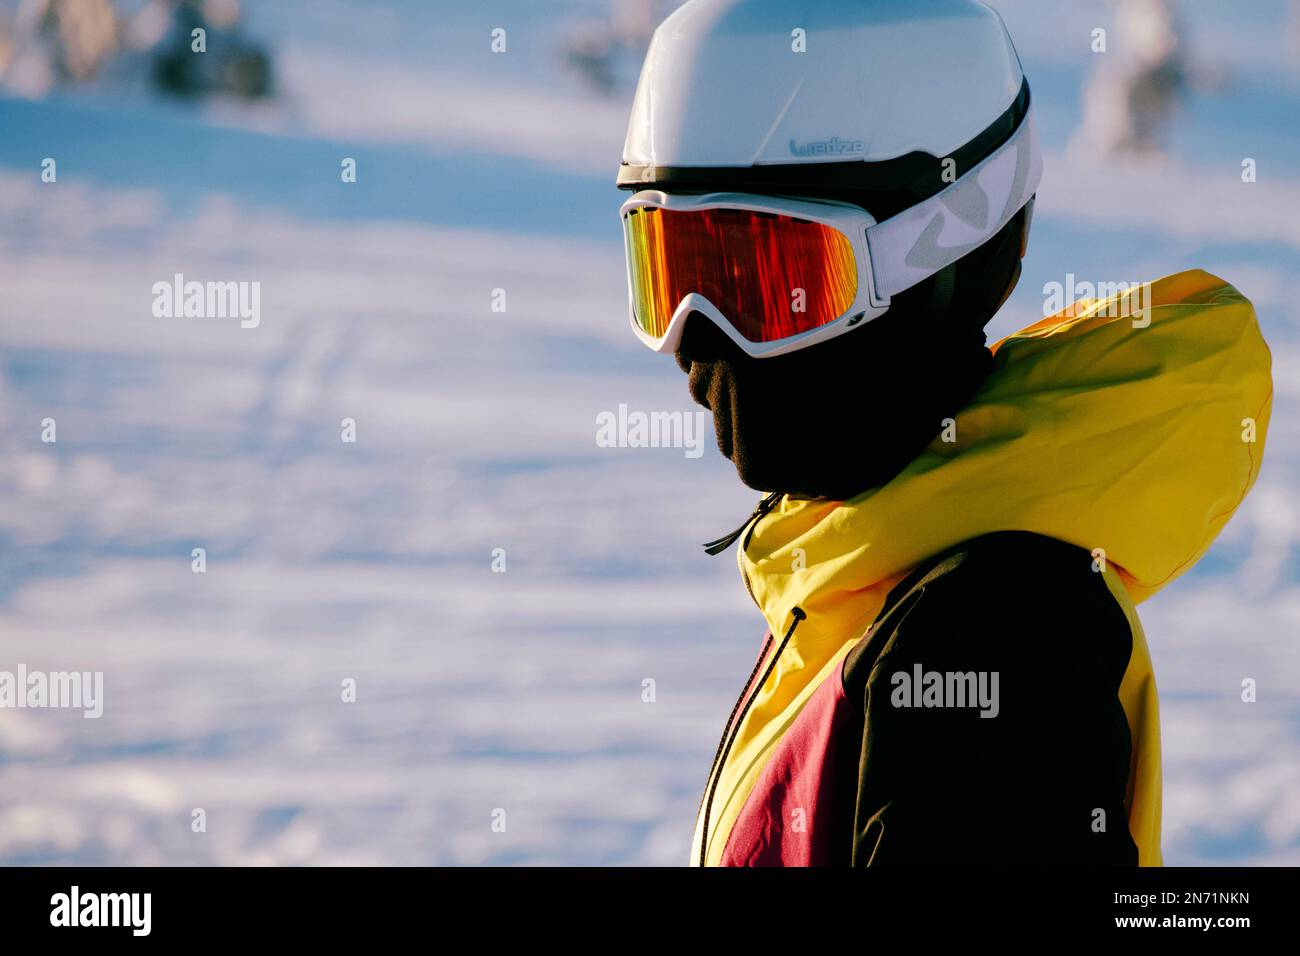 Un joven esquiador con chaqueta amarilla brillante se coloca sobre los esquís y mira en las lentes de la cámara. Foto de stock